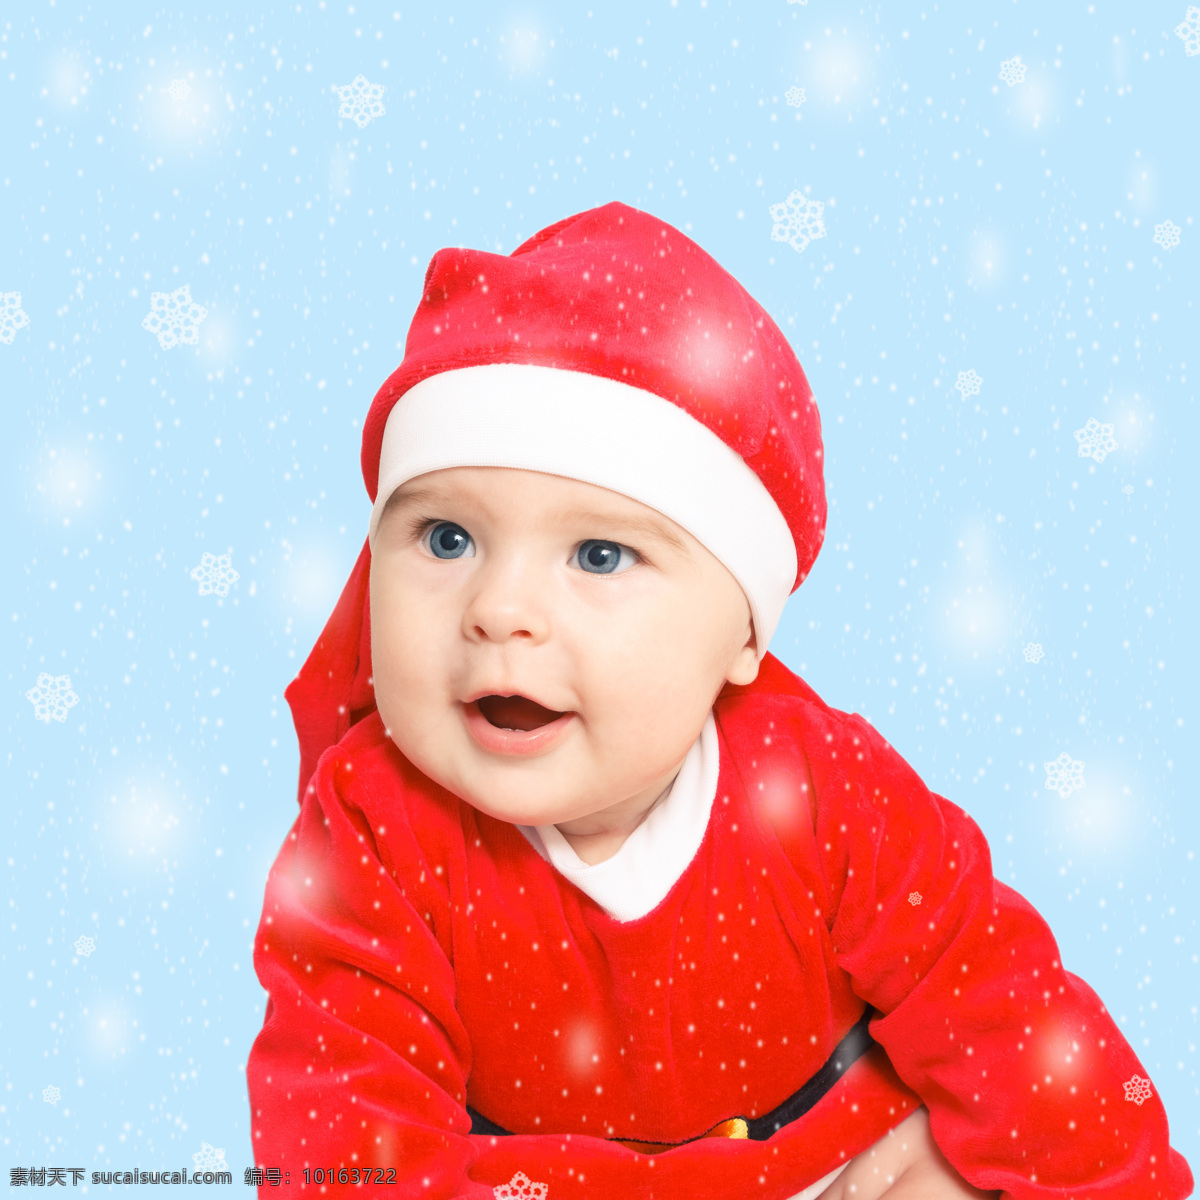 穿 圣诞 衣服 外国 小孩 外国小孩 雪花 人物 儿童图片 人物图片